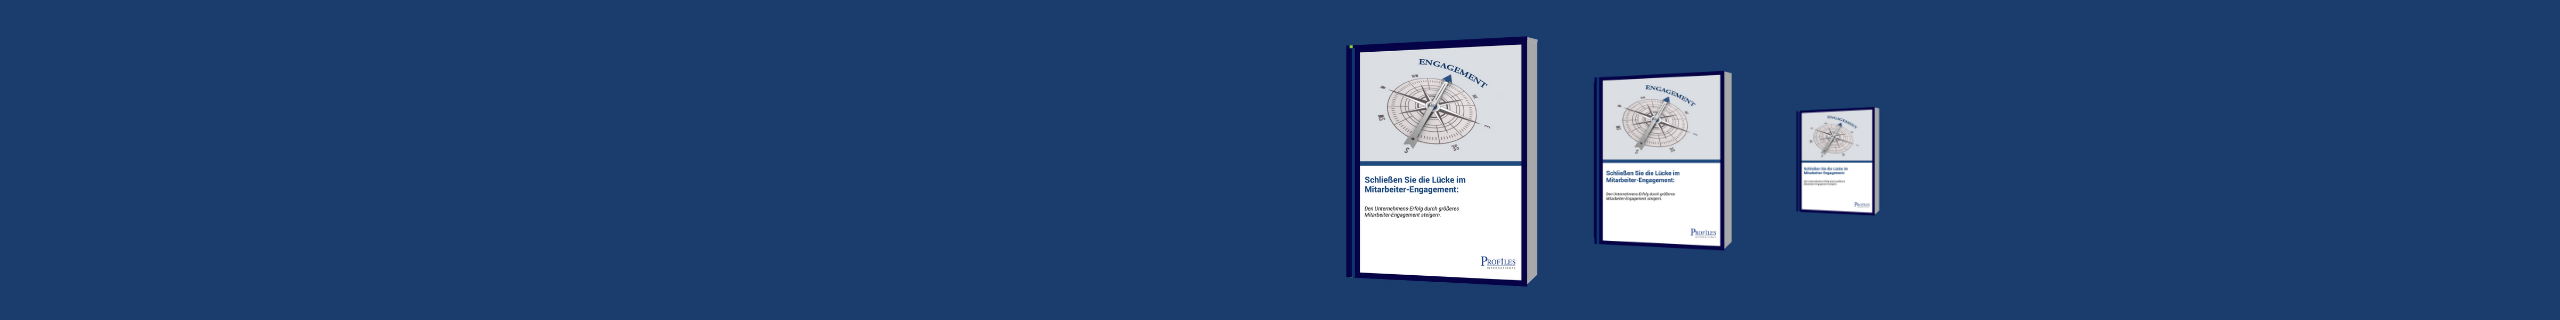 Wiley veröffentlicht ein neues Ebook - Schließen Sie die Lücke im Mitarbeiter-Engagement: